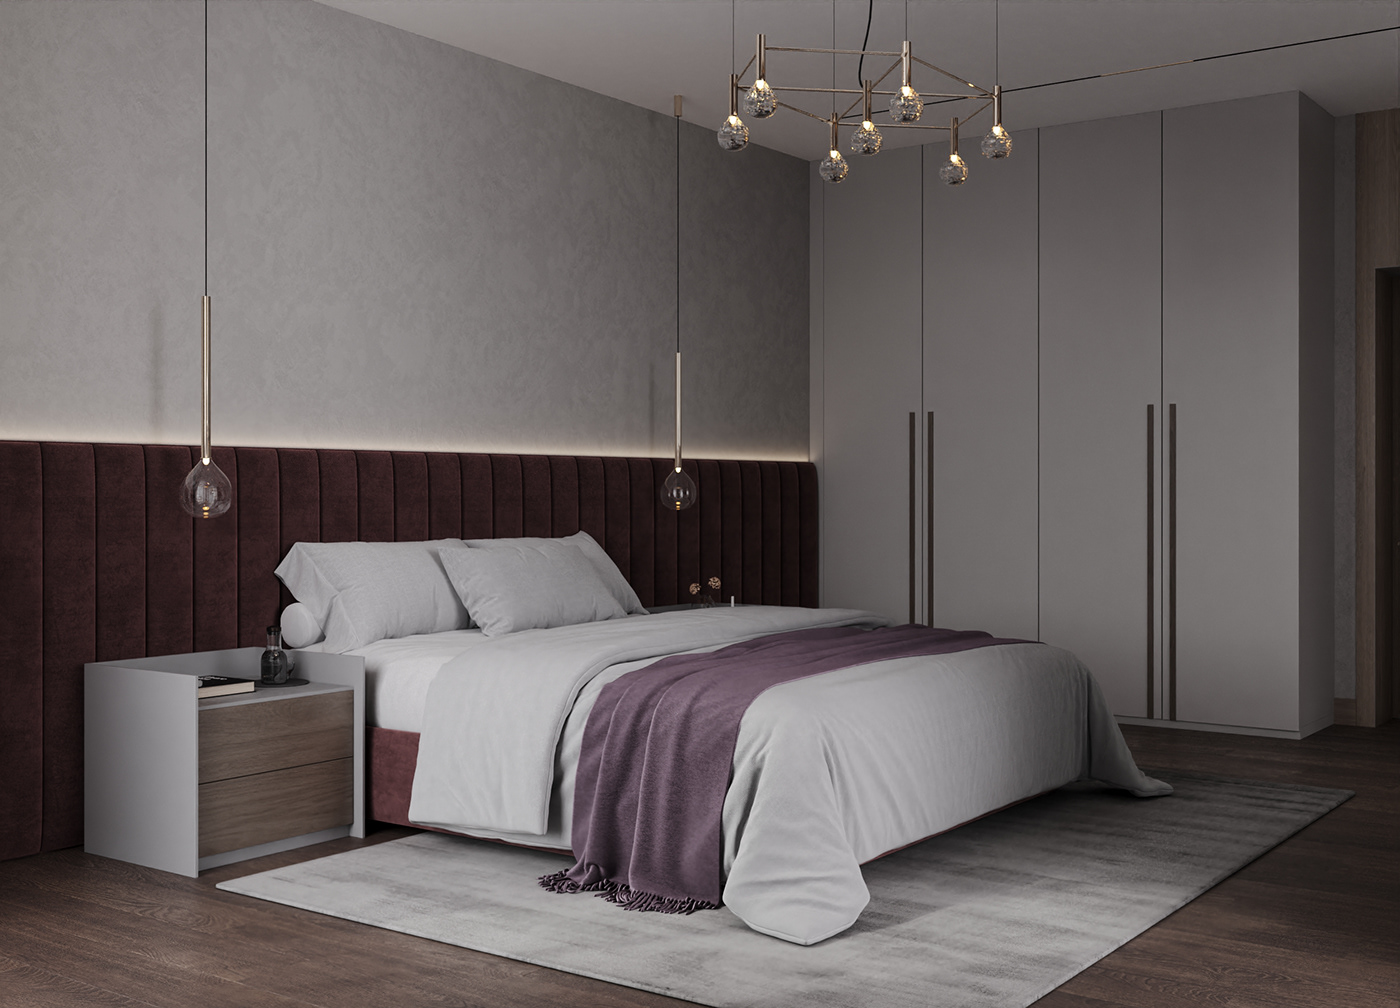 bedroom bedroom design visualization спальня дизайн спальня интерьер дизайн интерьера interior design  3ds max визуализация